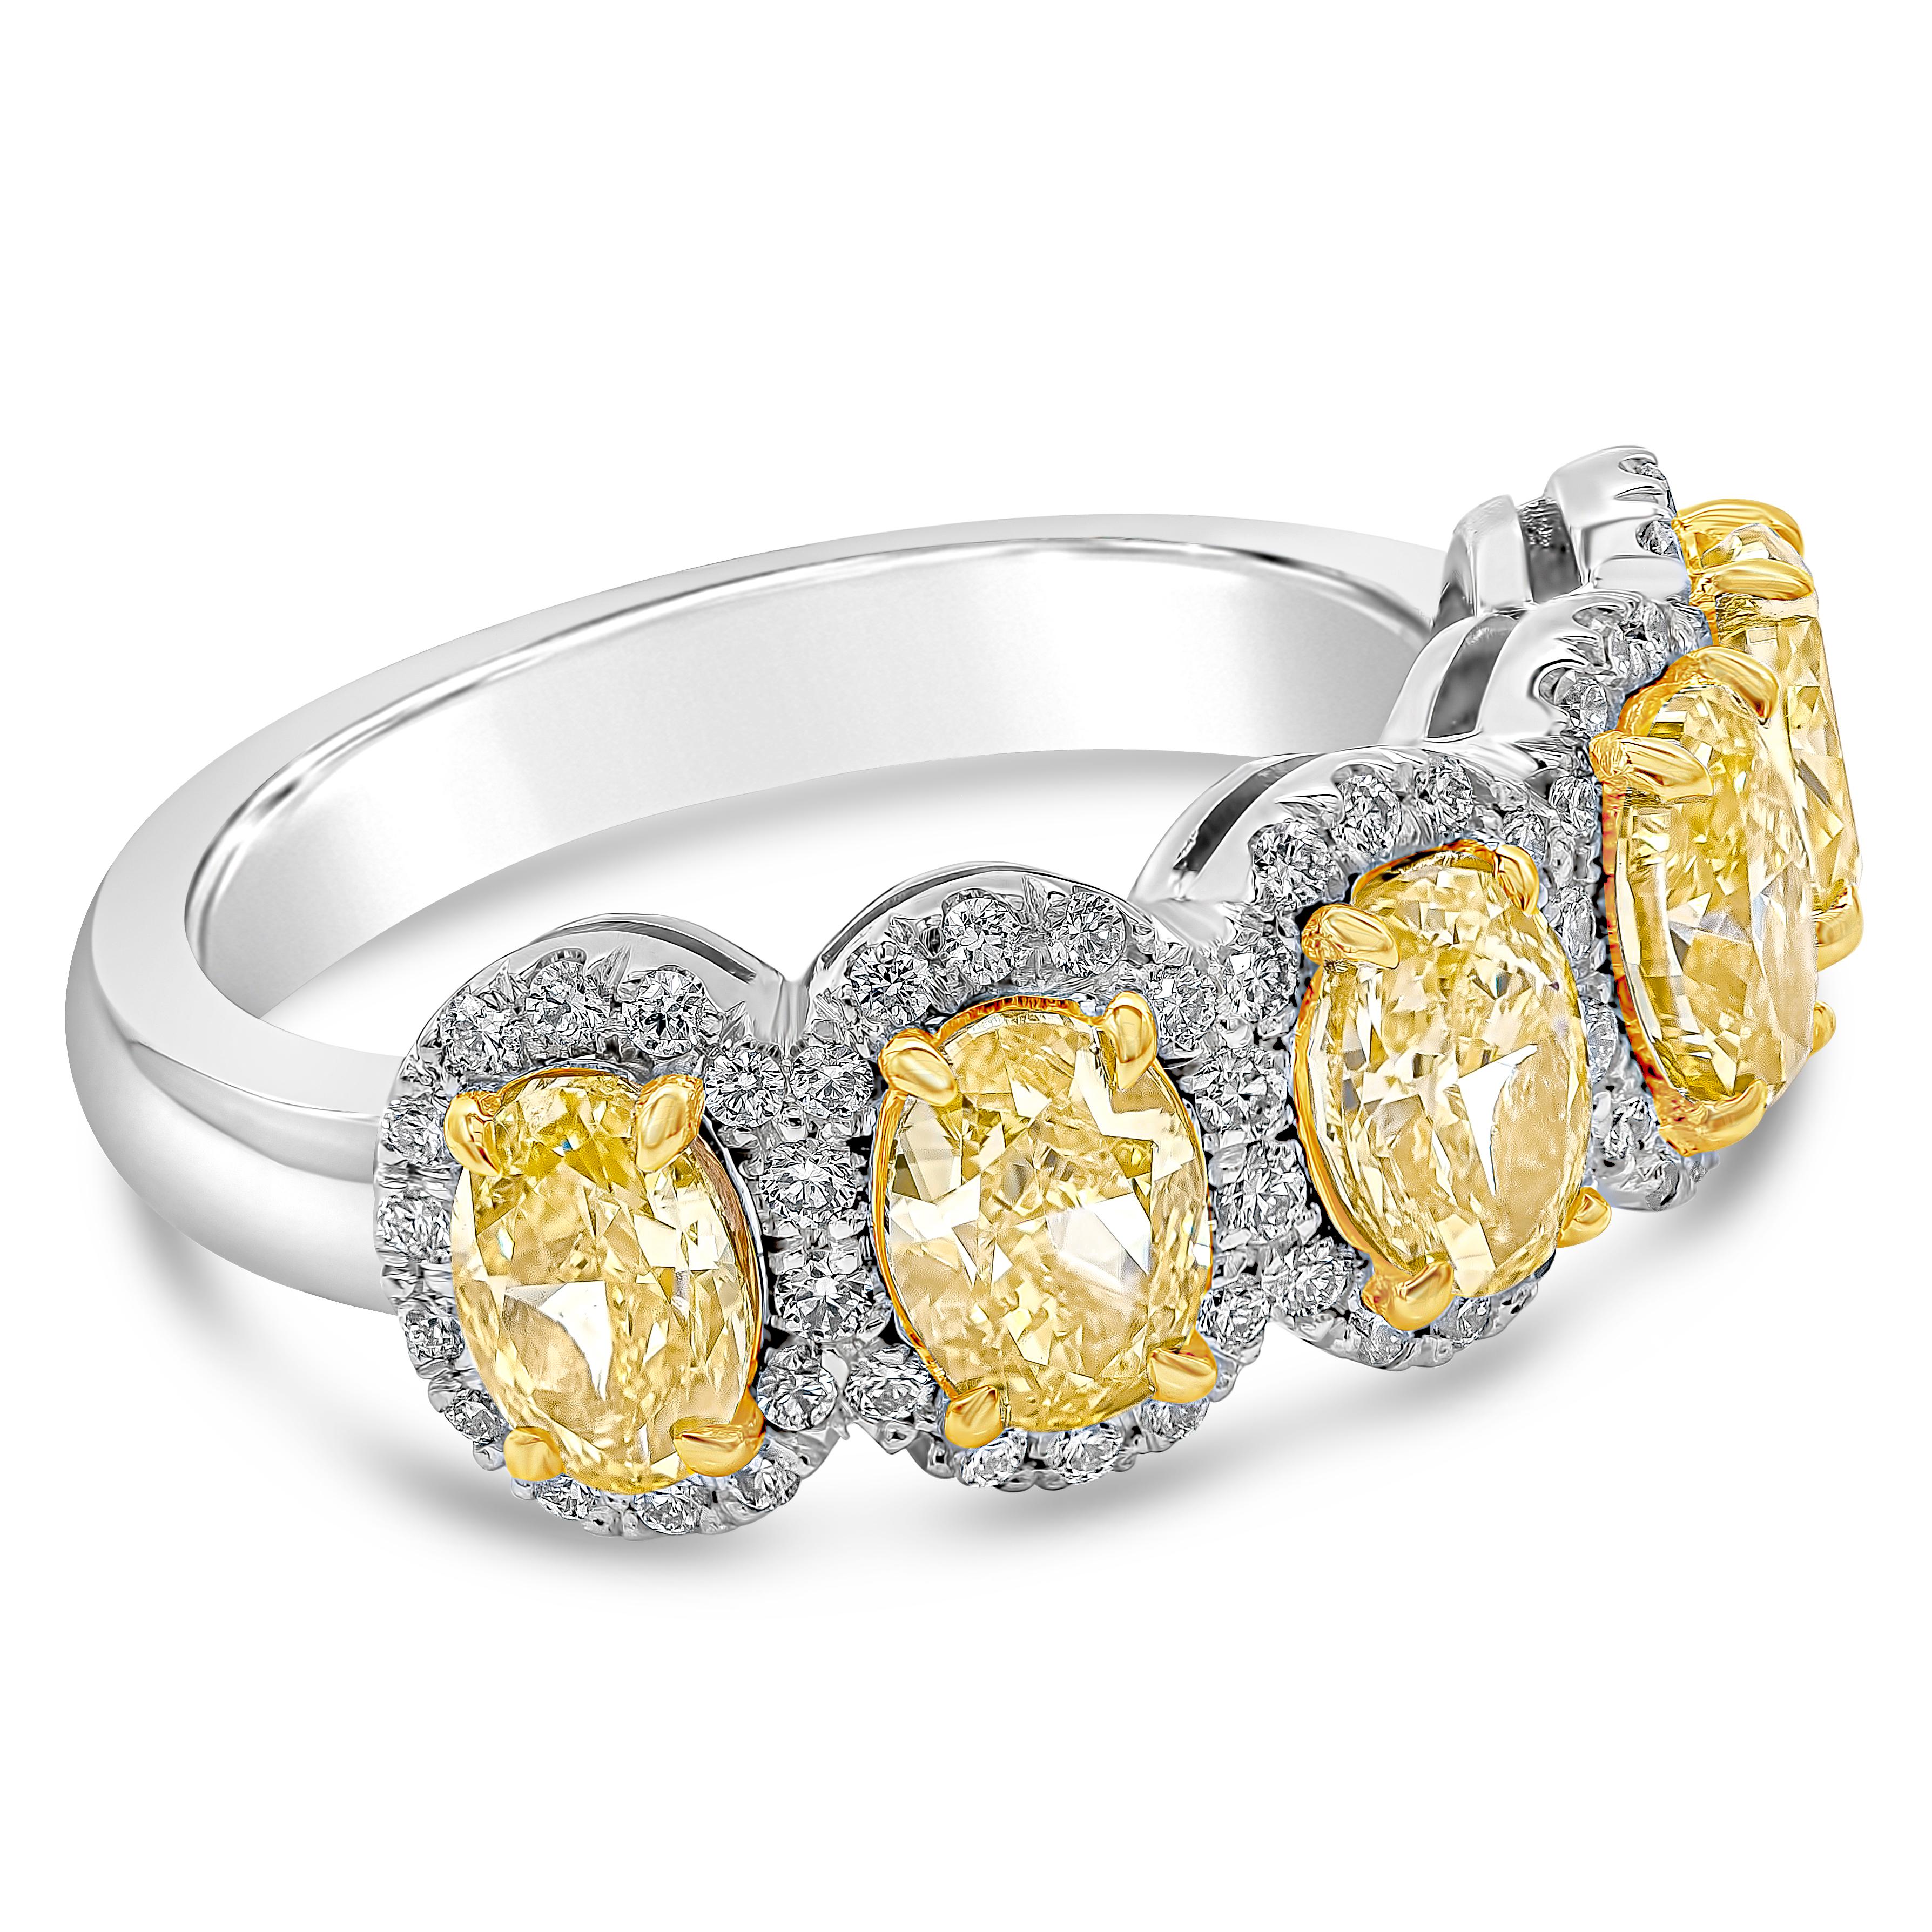 Ein farbenprächtiger Ring mit leuchtenden und intensiven gelben Diamanten im Ovalschliff, die jeweils von einer Reihe runder Brillanten umgeben sind. Die gelben Diamanten wiegen insgesamt 2.51 Karat, Reinheit VS. Weiße Diamanten wiegen insgesamt